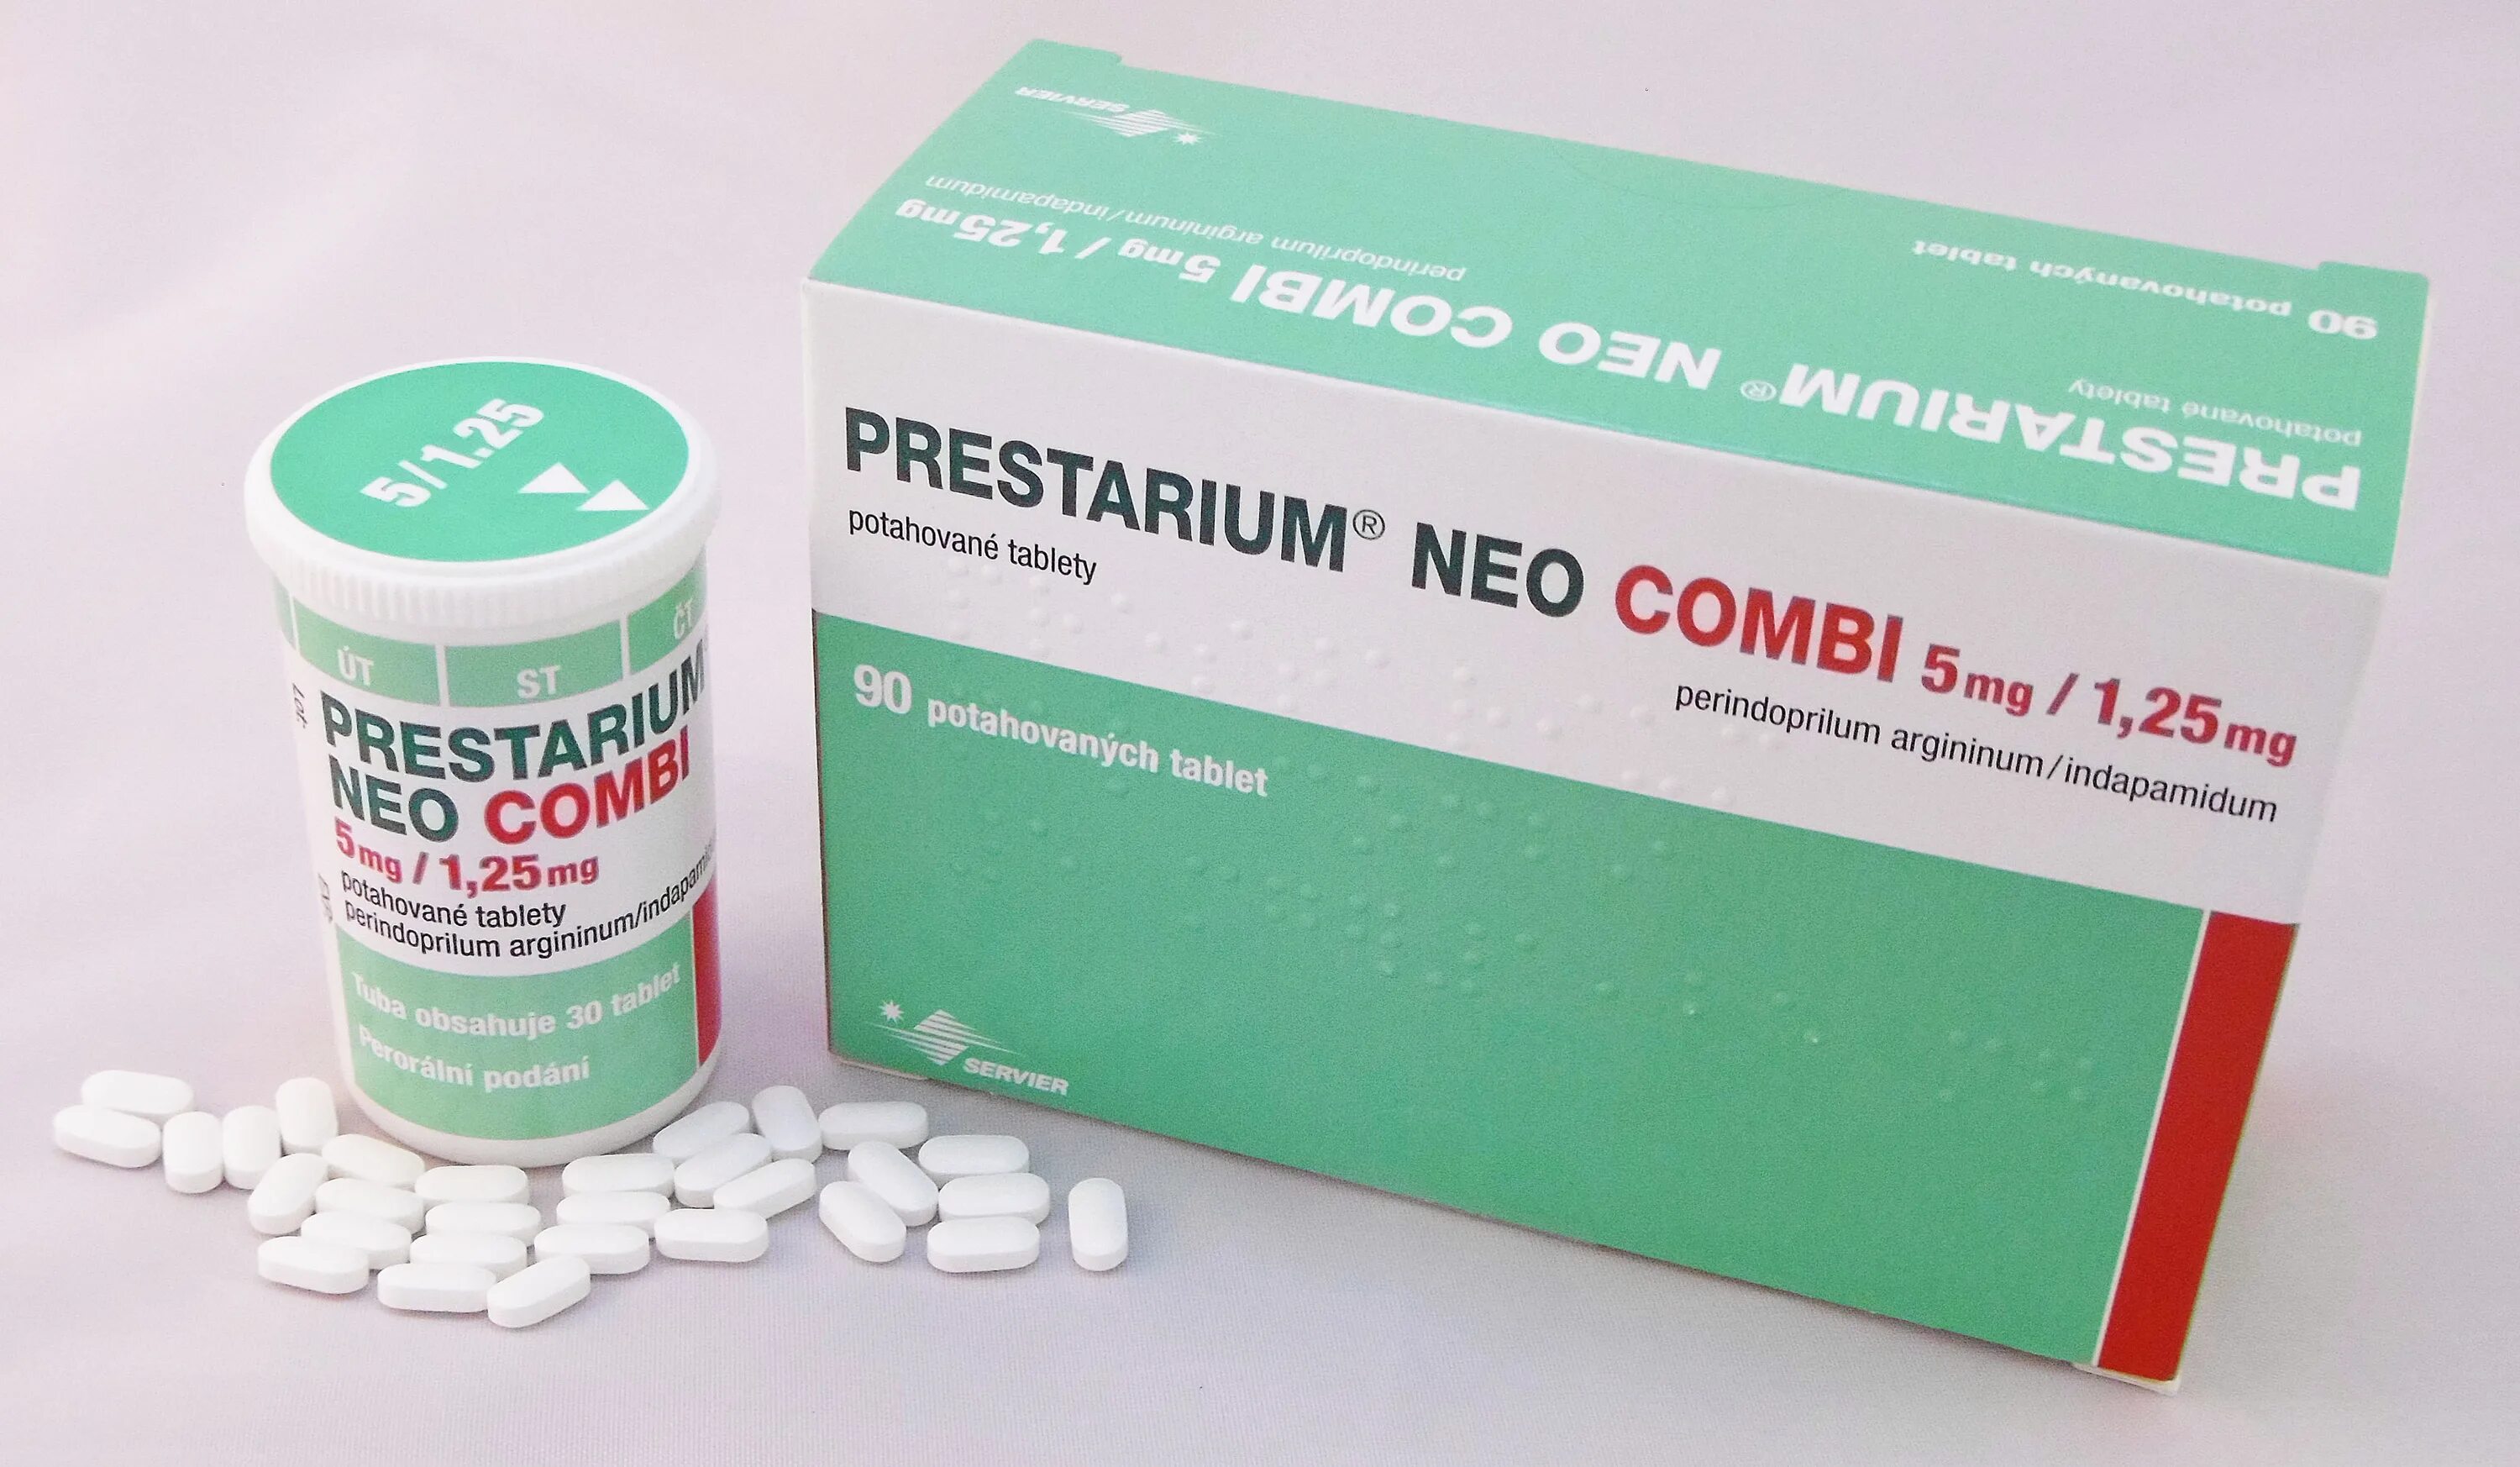 Аналог престариума 5 мг. Prestarium 5 MG. Престариум 5+1,25. Престариум 2 мг. Престариум Нео.